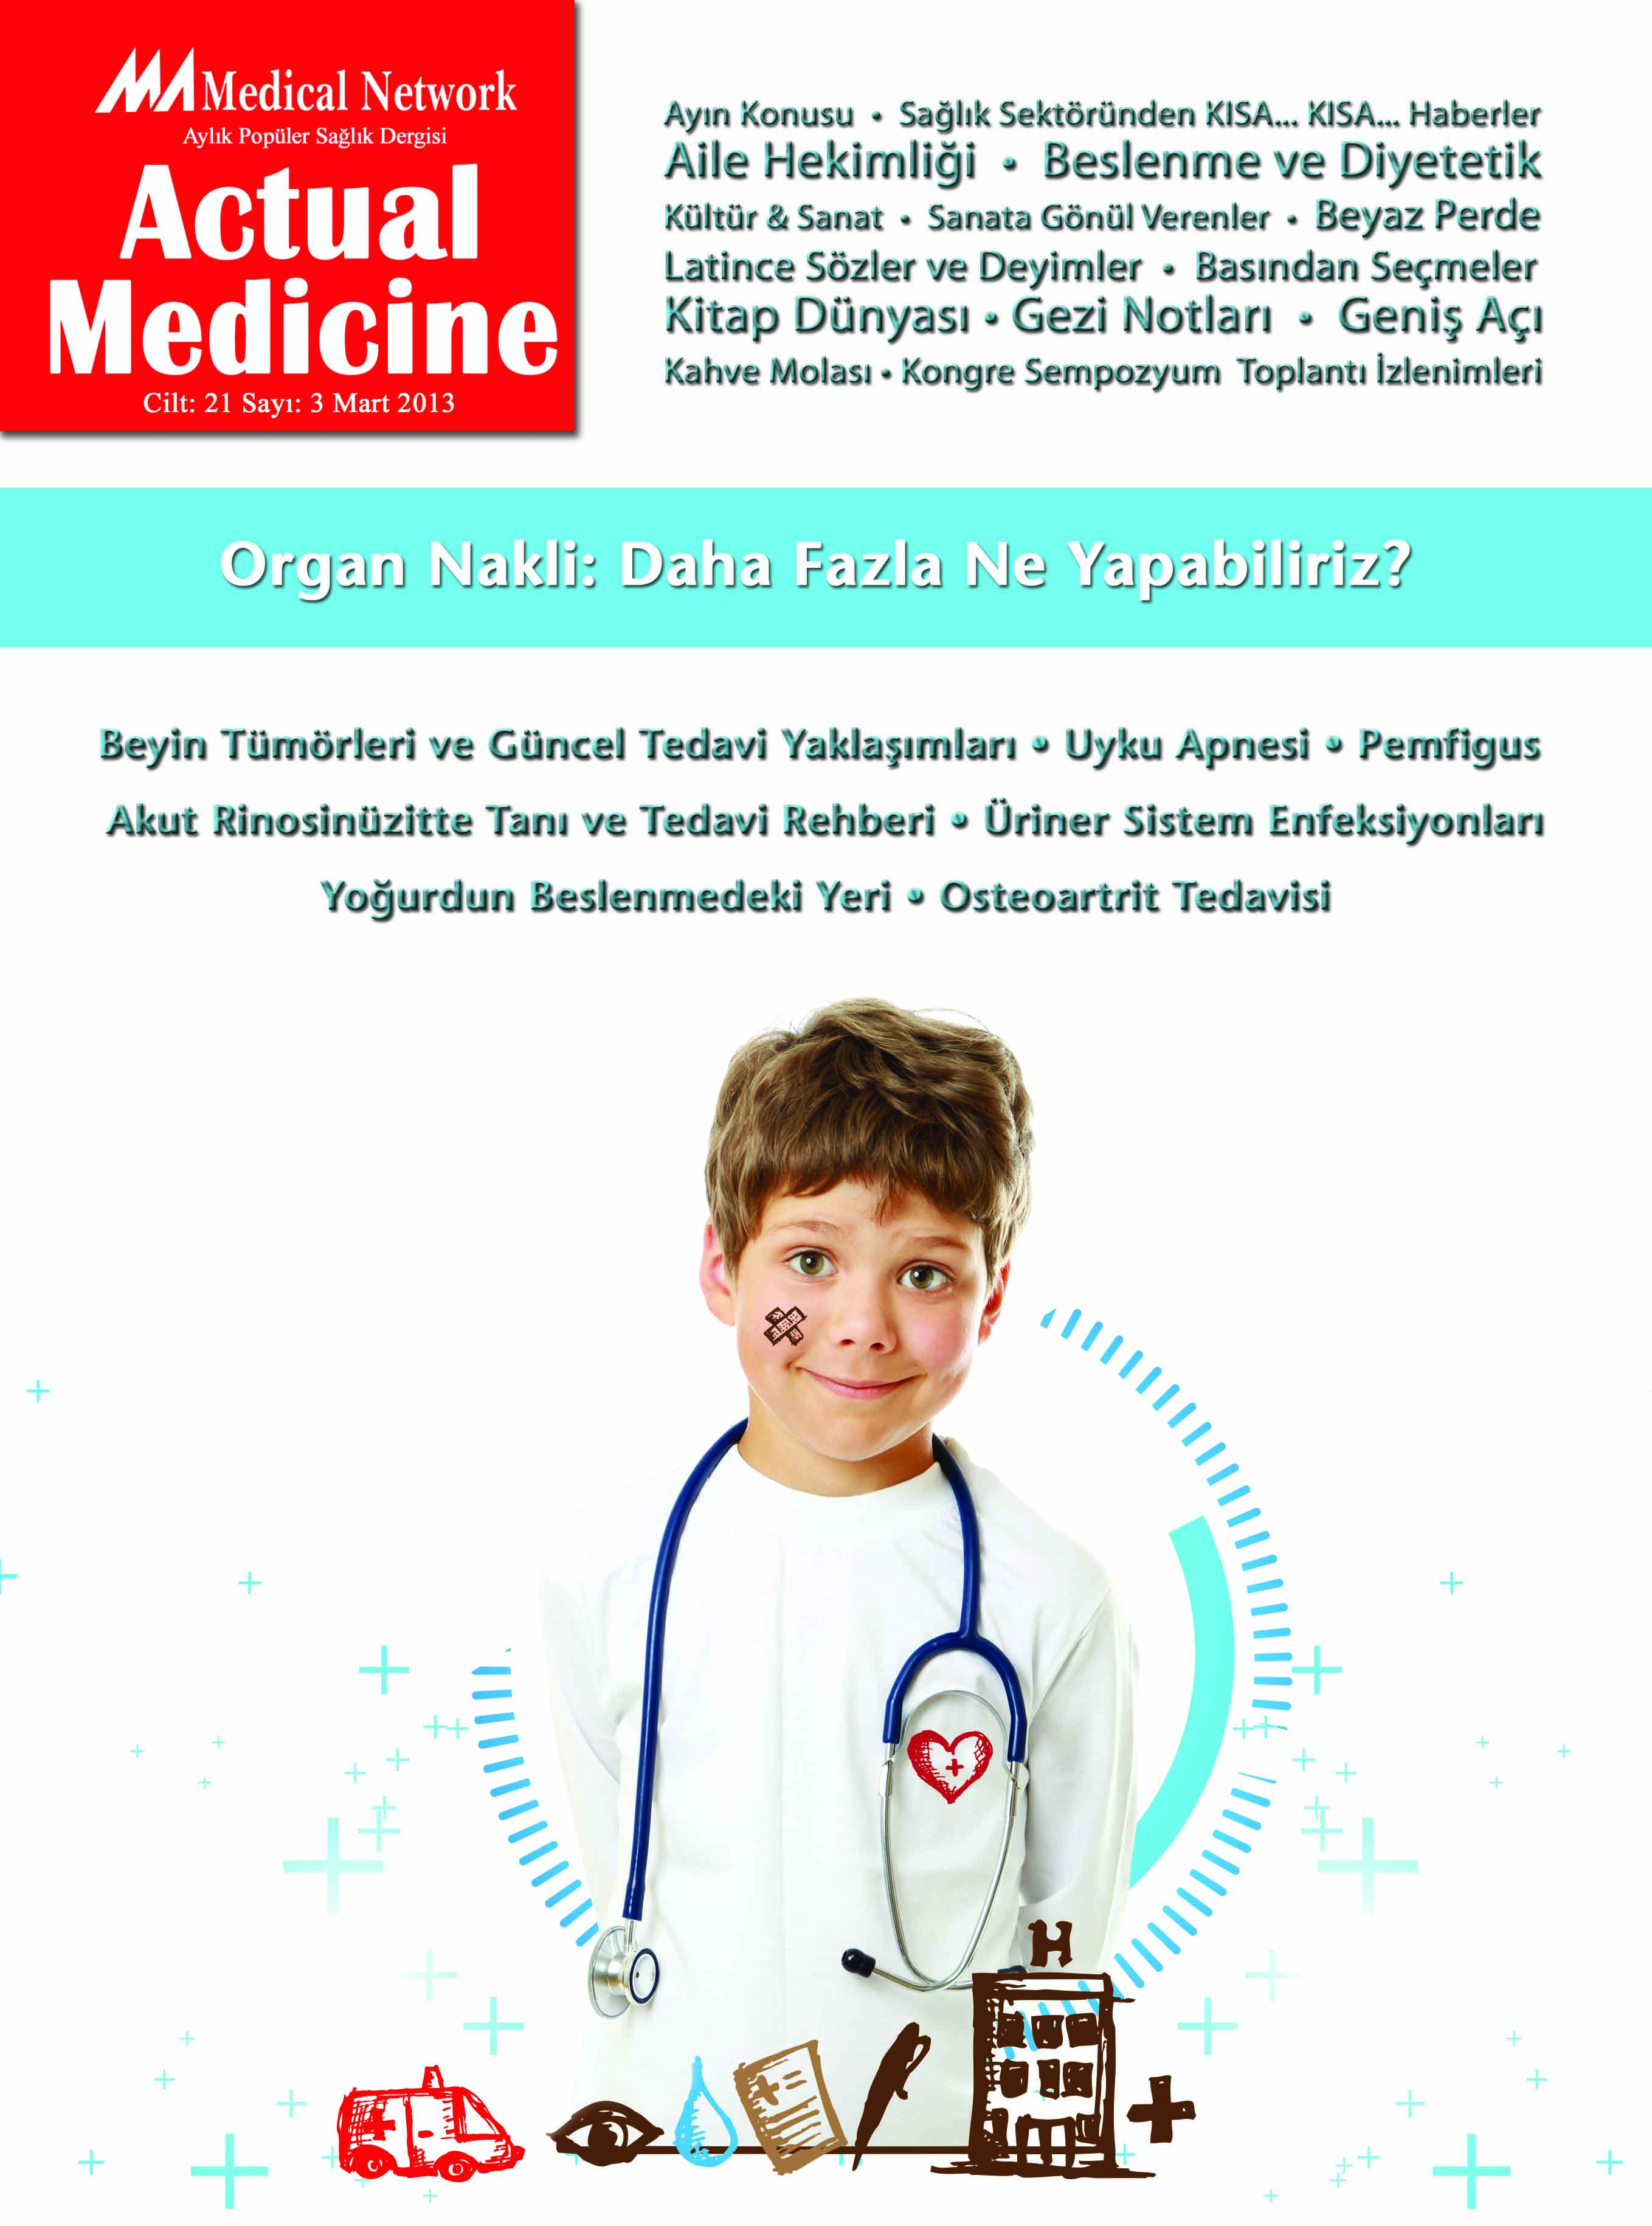 <p>Actual Medicine Cilt: 21 Sayı: 3 2013</p>